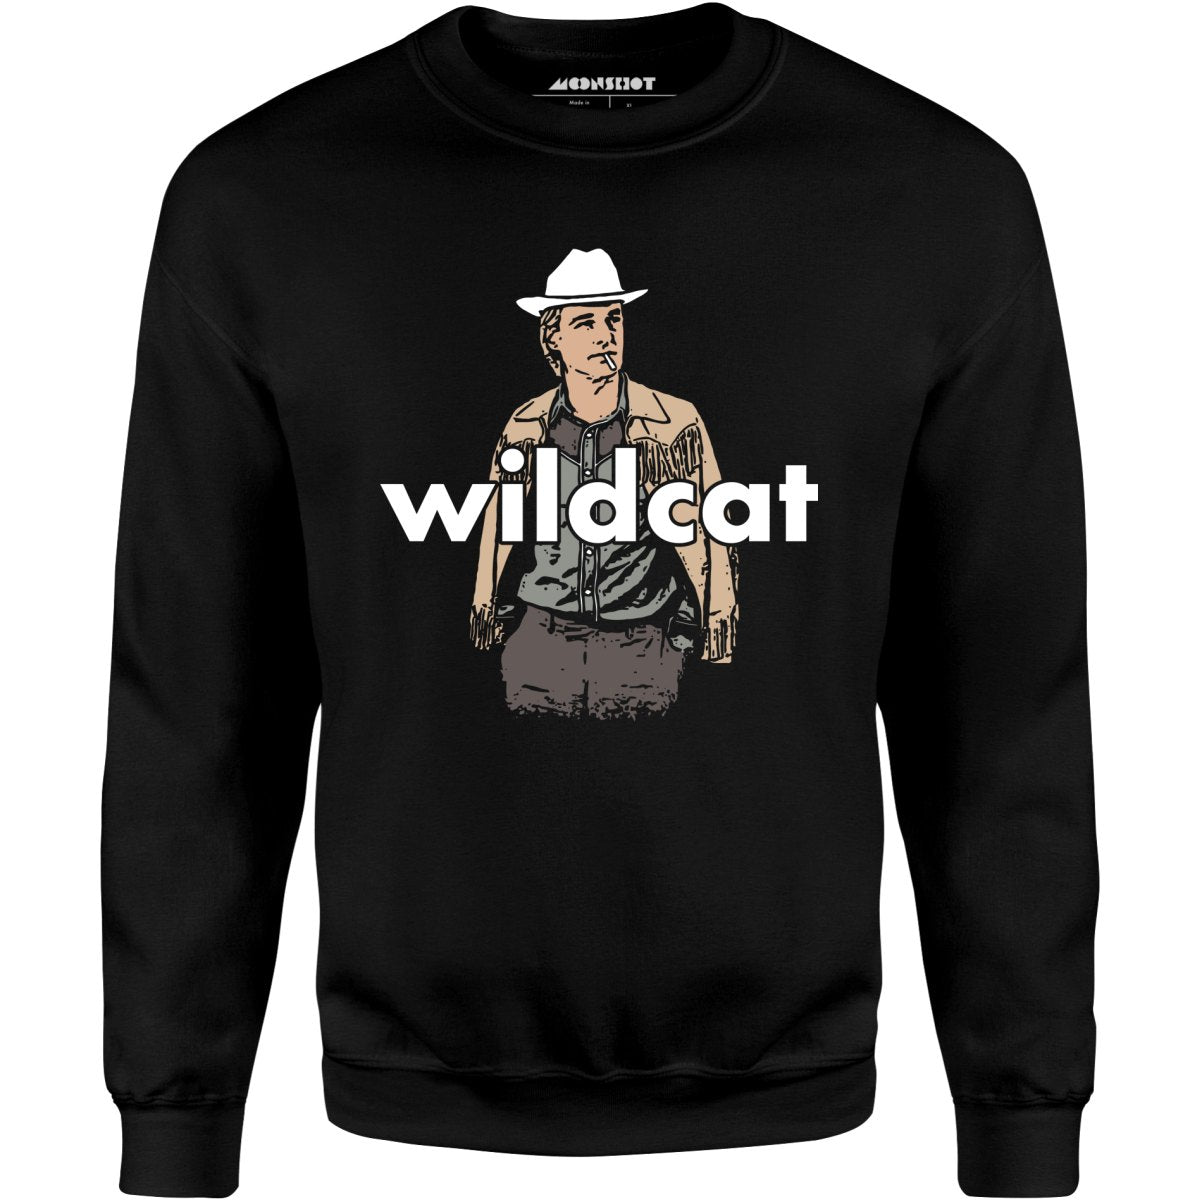 Wildcat - Unisex Sweatshirt